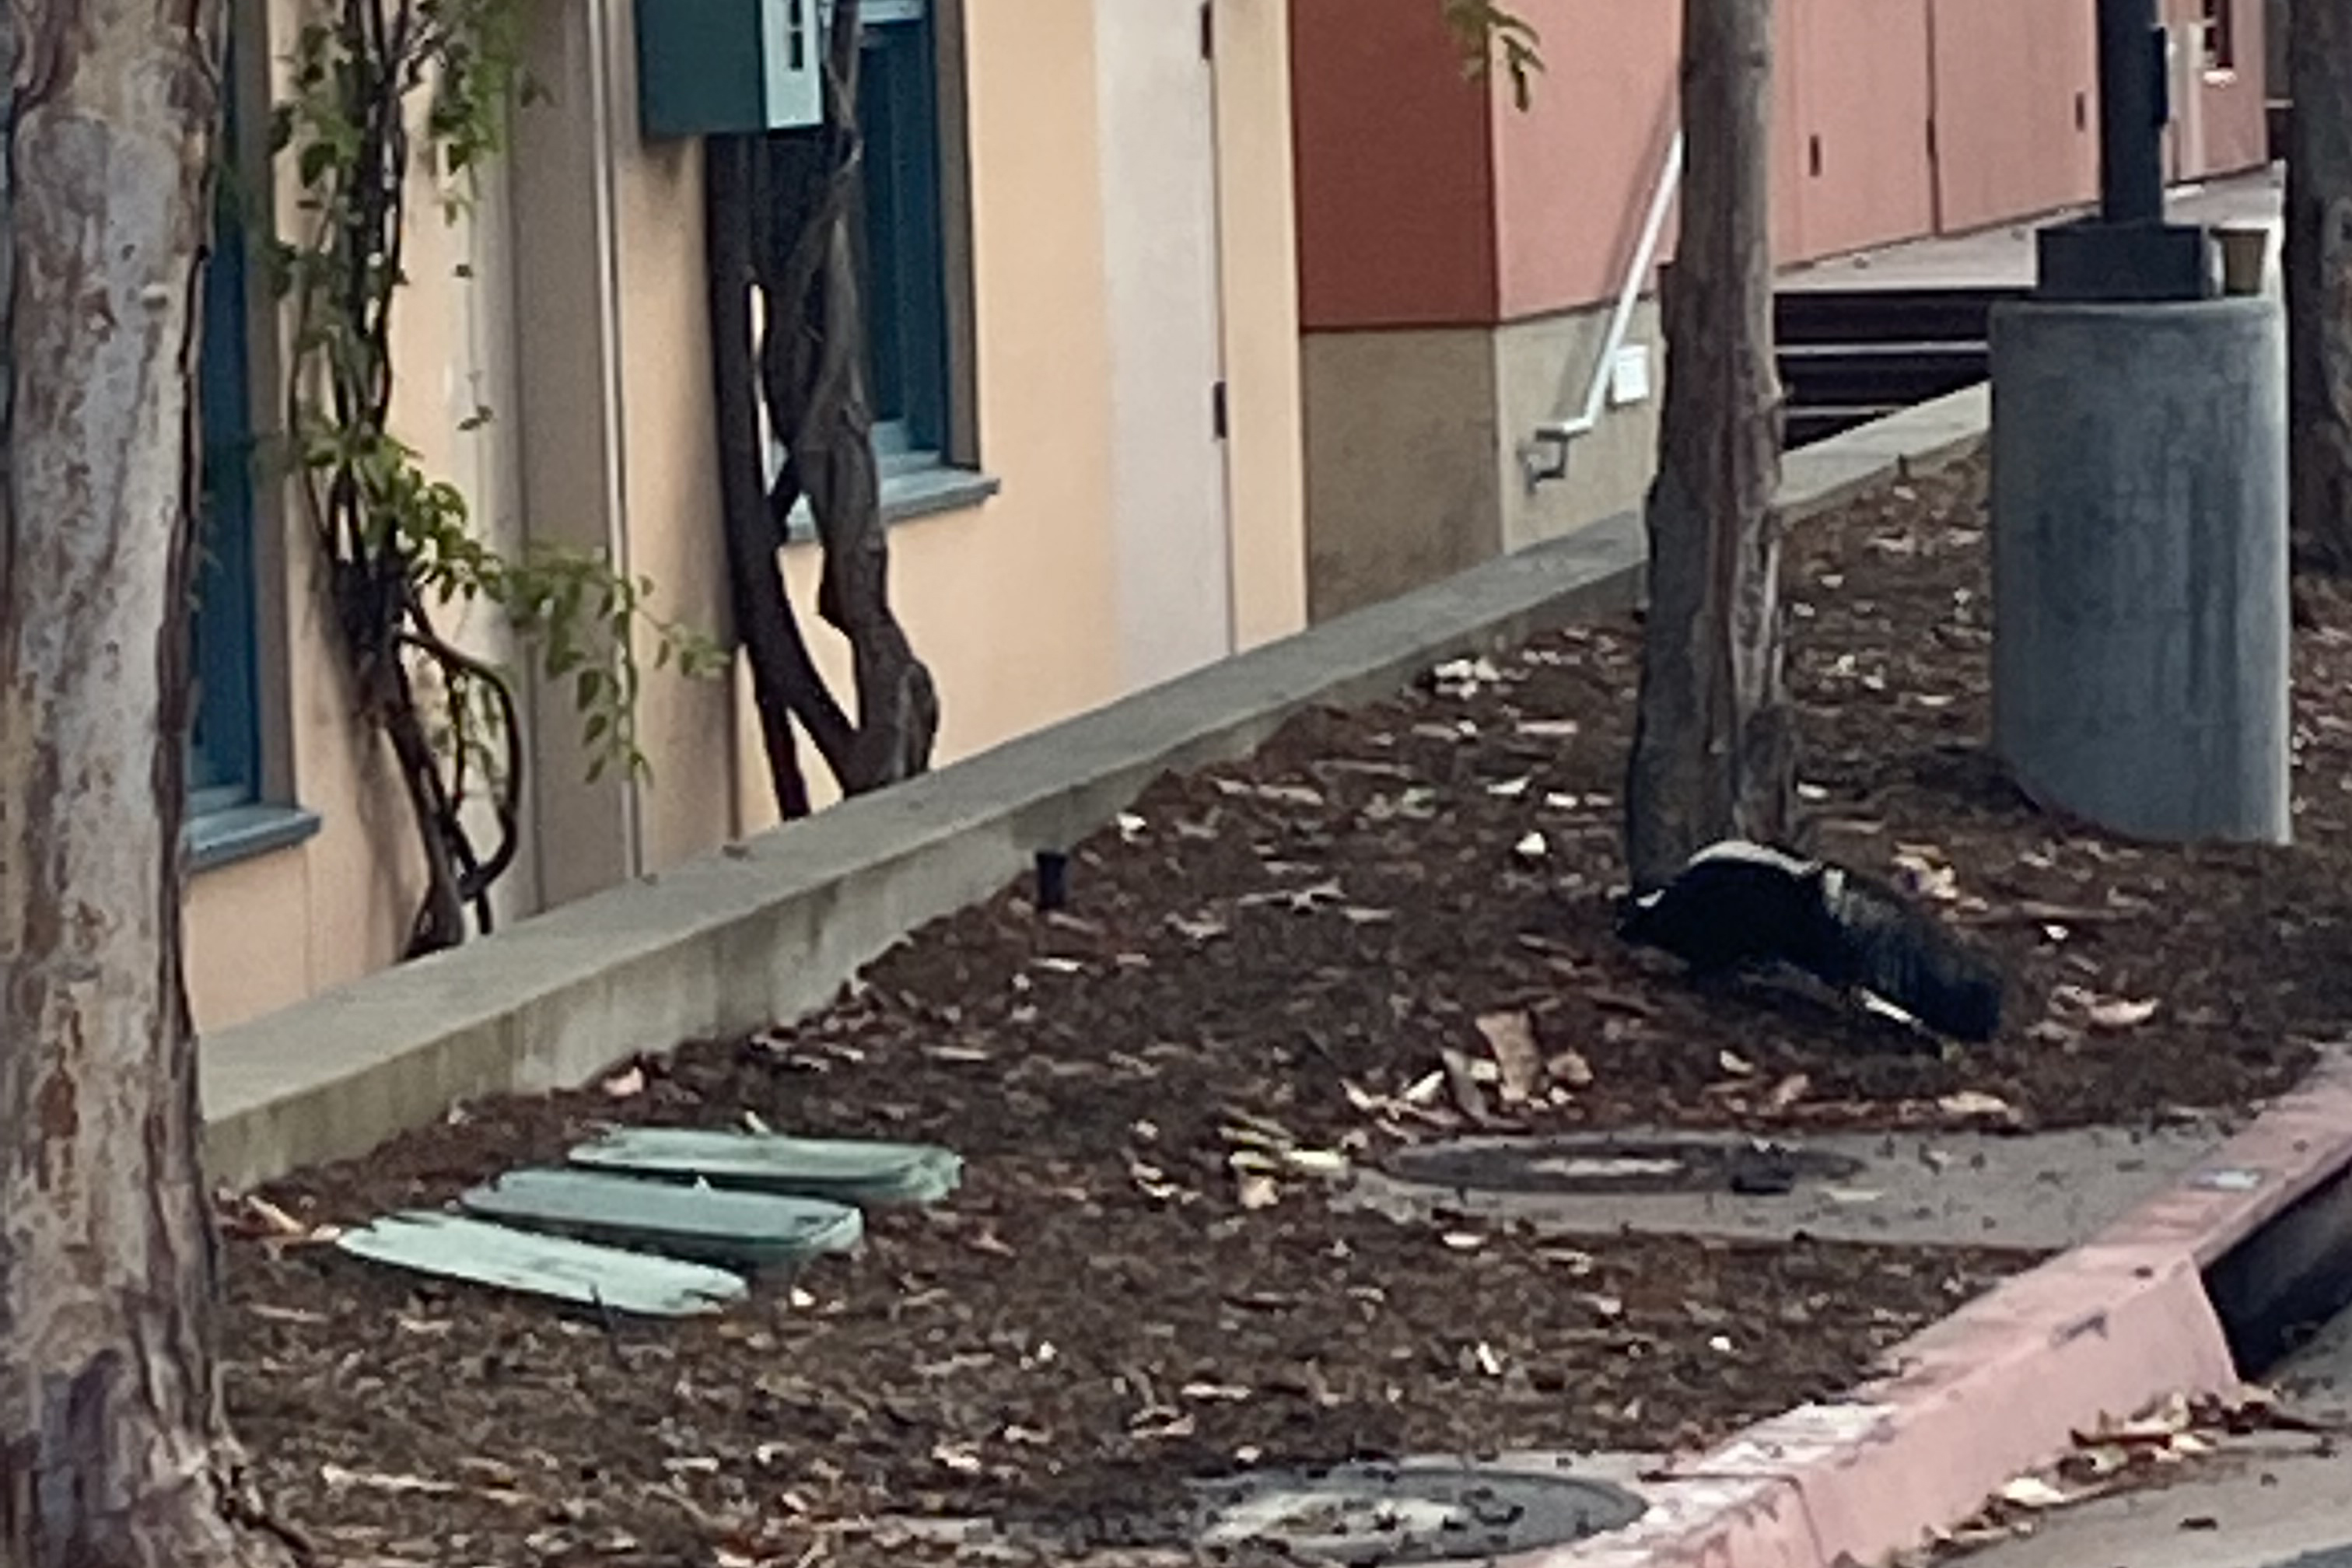 skunk outside office